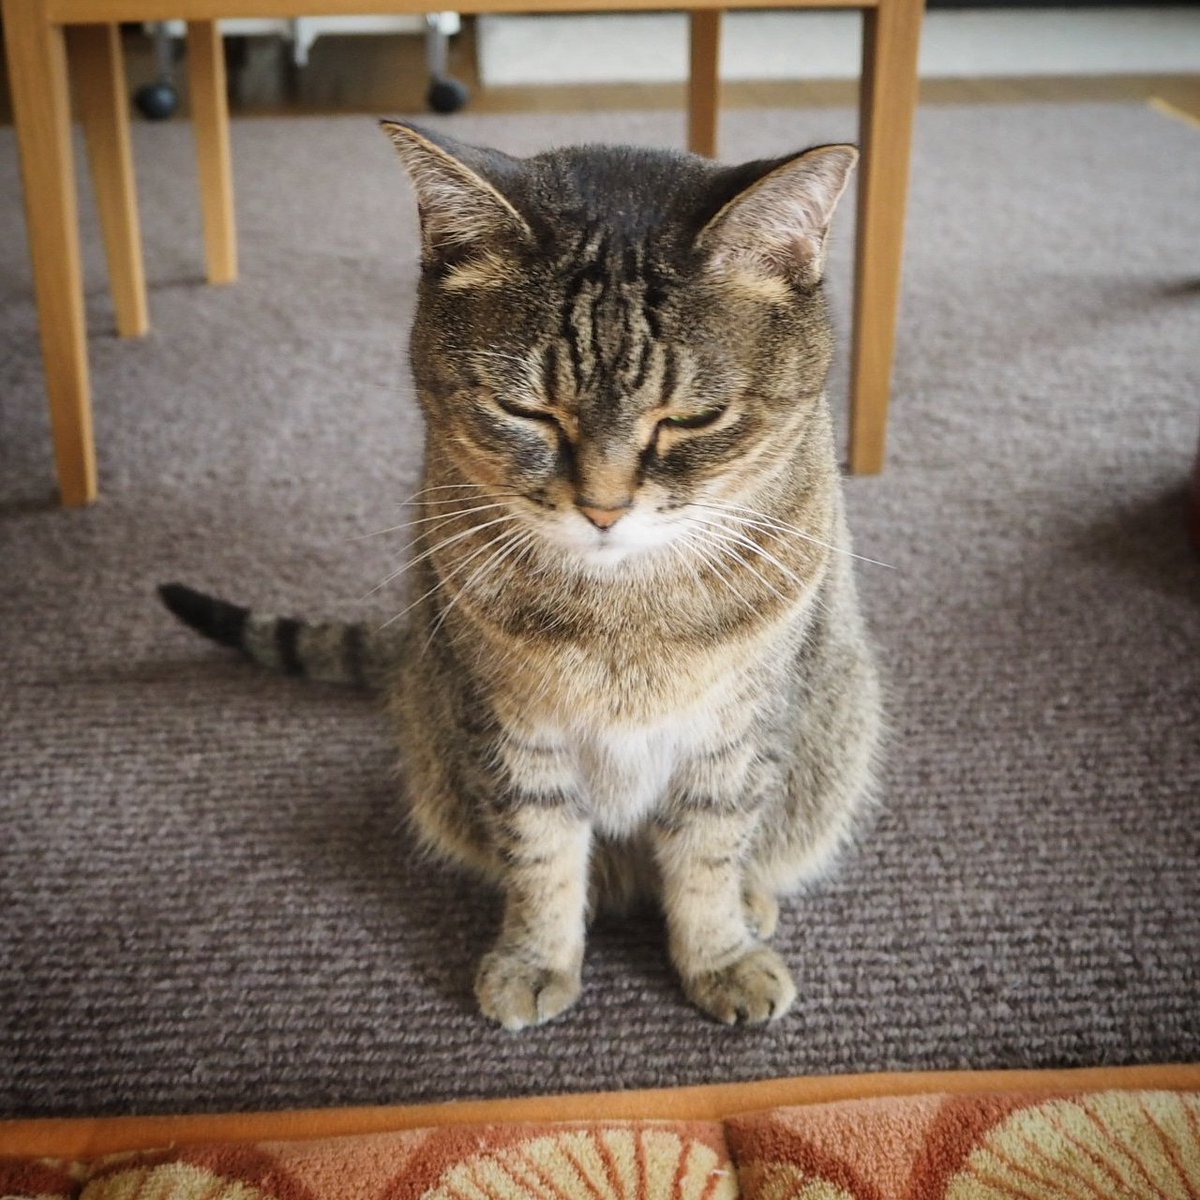 磯貝圭子 Keiko Isogai On Twitter 前足の開き具合が可愛い 猫 ネコ部 ネコ Neko Cats Cat ニャンコ Nyan キジトラ キジトラ部 キジトラ猫 Browntabby 保護猫